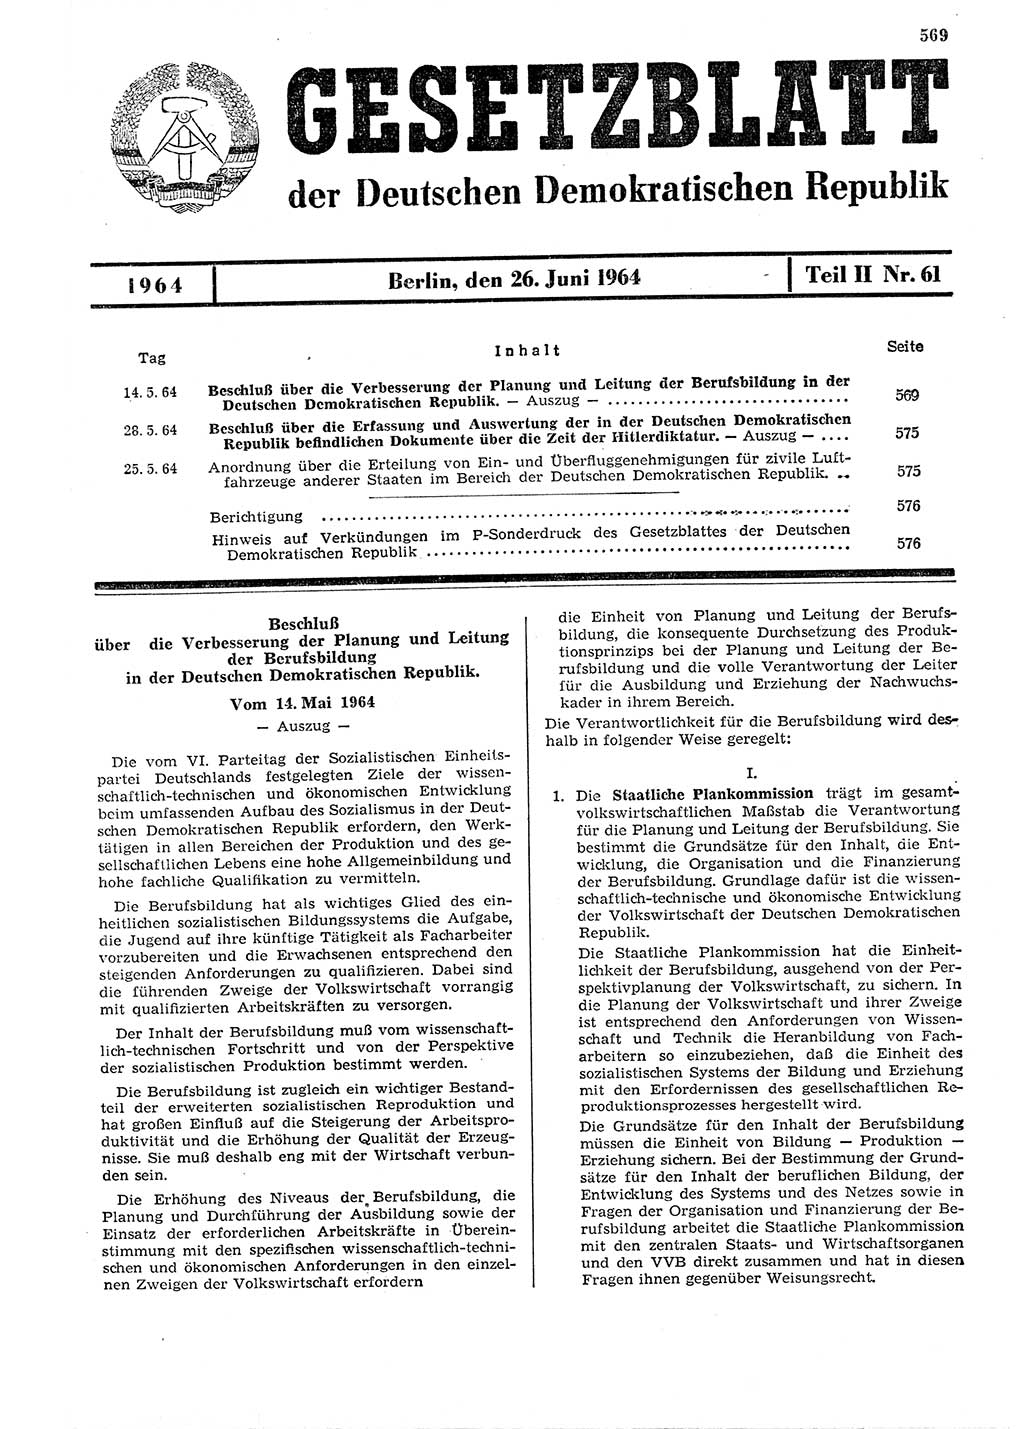 Gesetzblatt (GBl.) der Deutschen Demokratischen Republik (DDR) Teil ⅠⅠ 1964, Seite 569 (GBl. DDR ⅠⅠ 1964, S. 569)